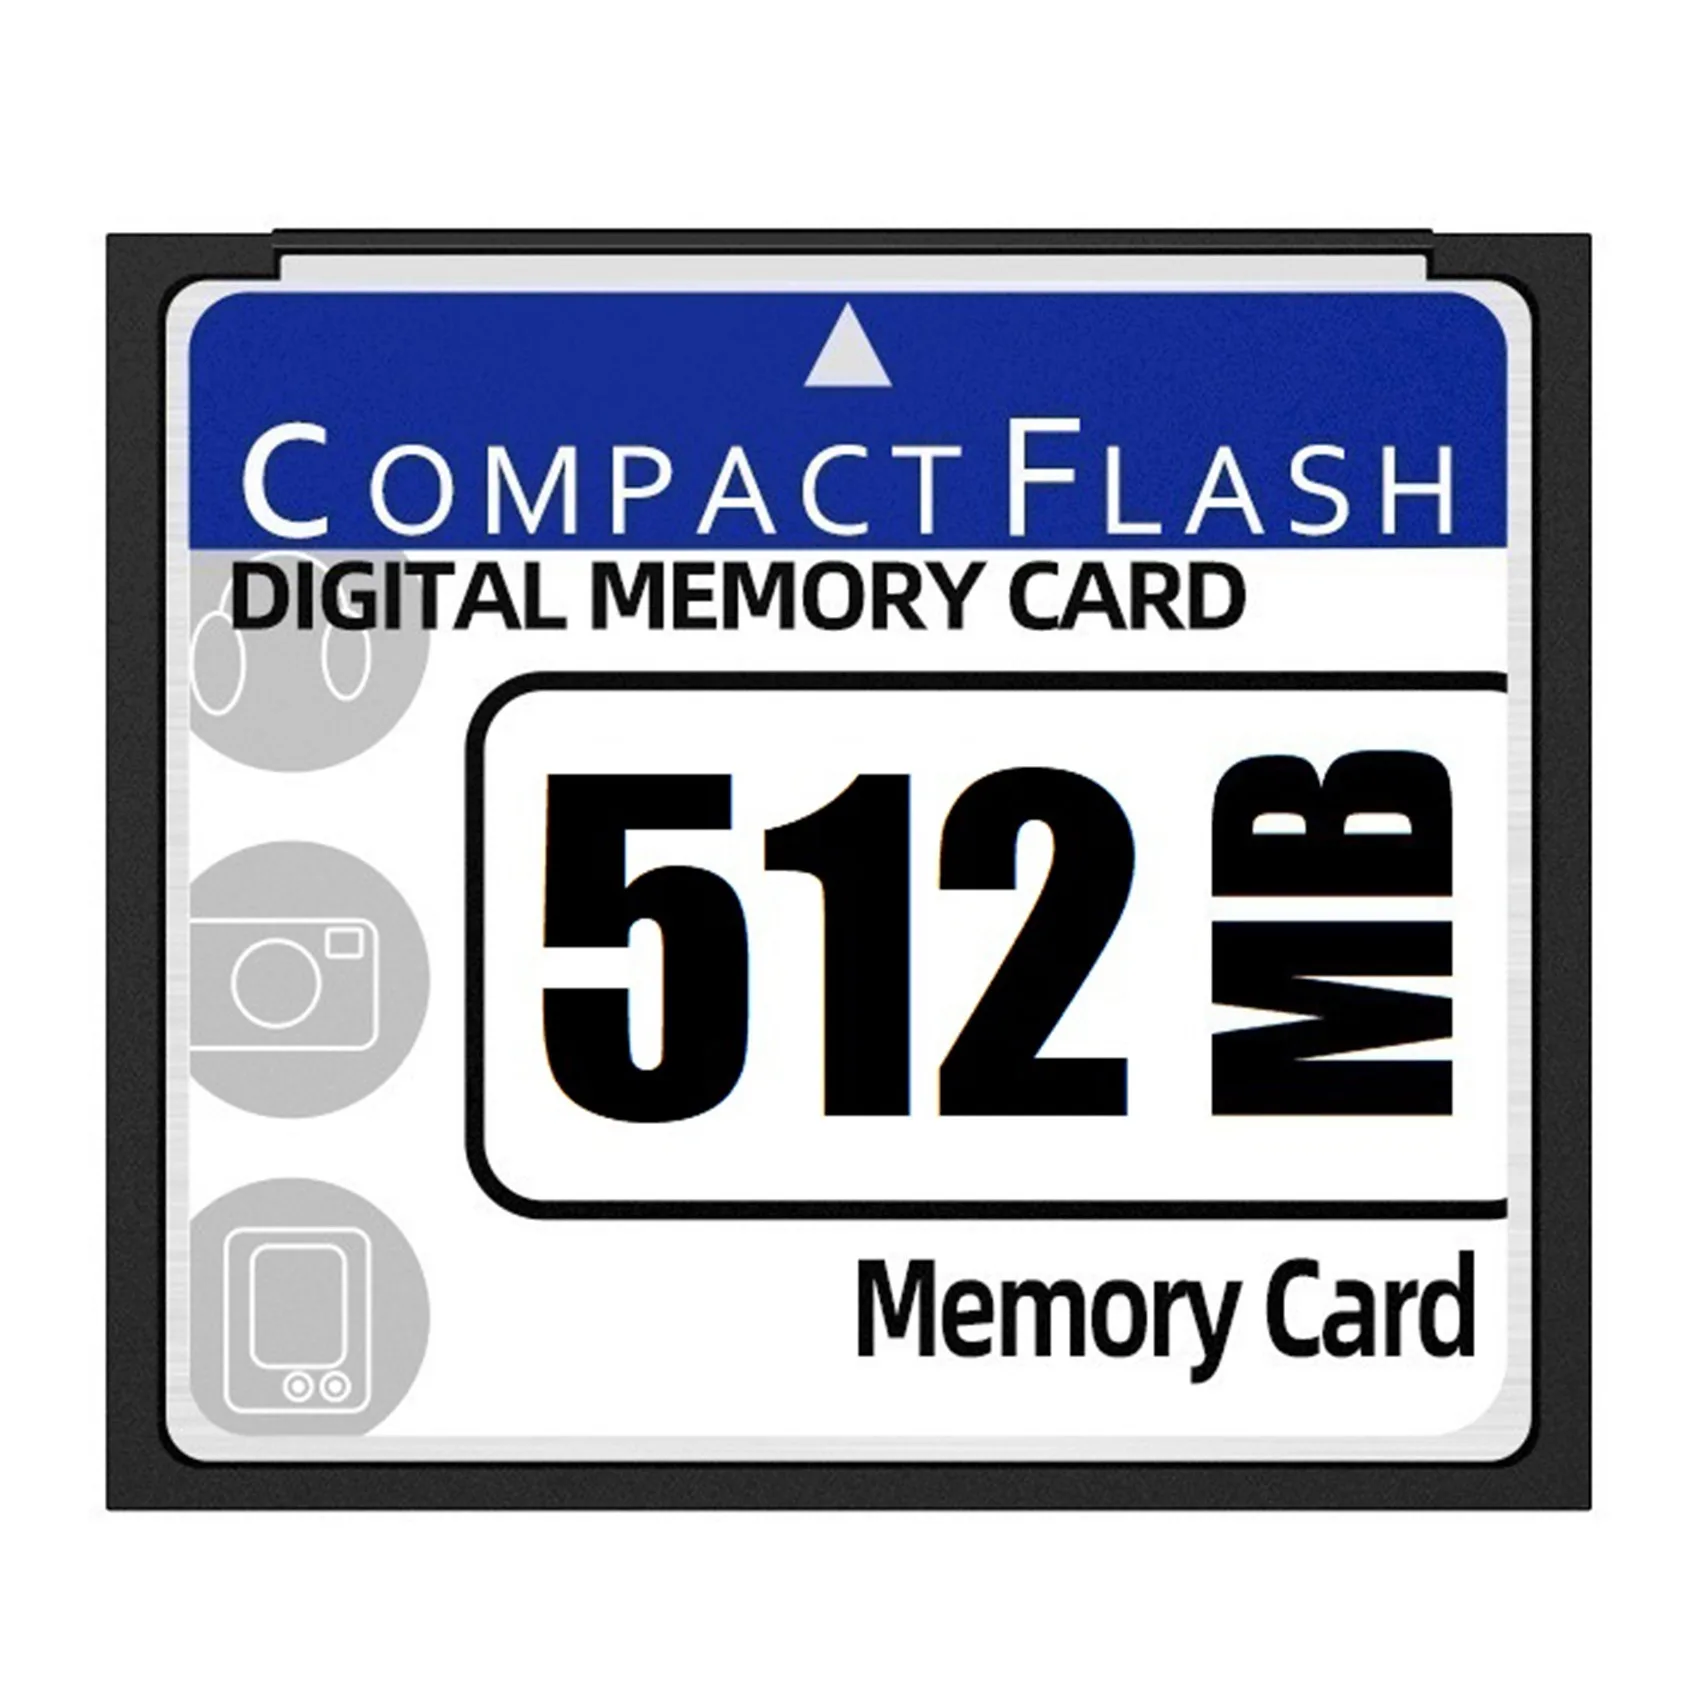 Карта компактной флэш-памяти объемом 512 МБ для камеры, рекламной машины, промышленной компьютерной карты